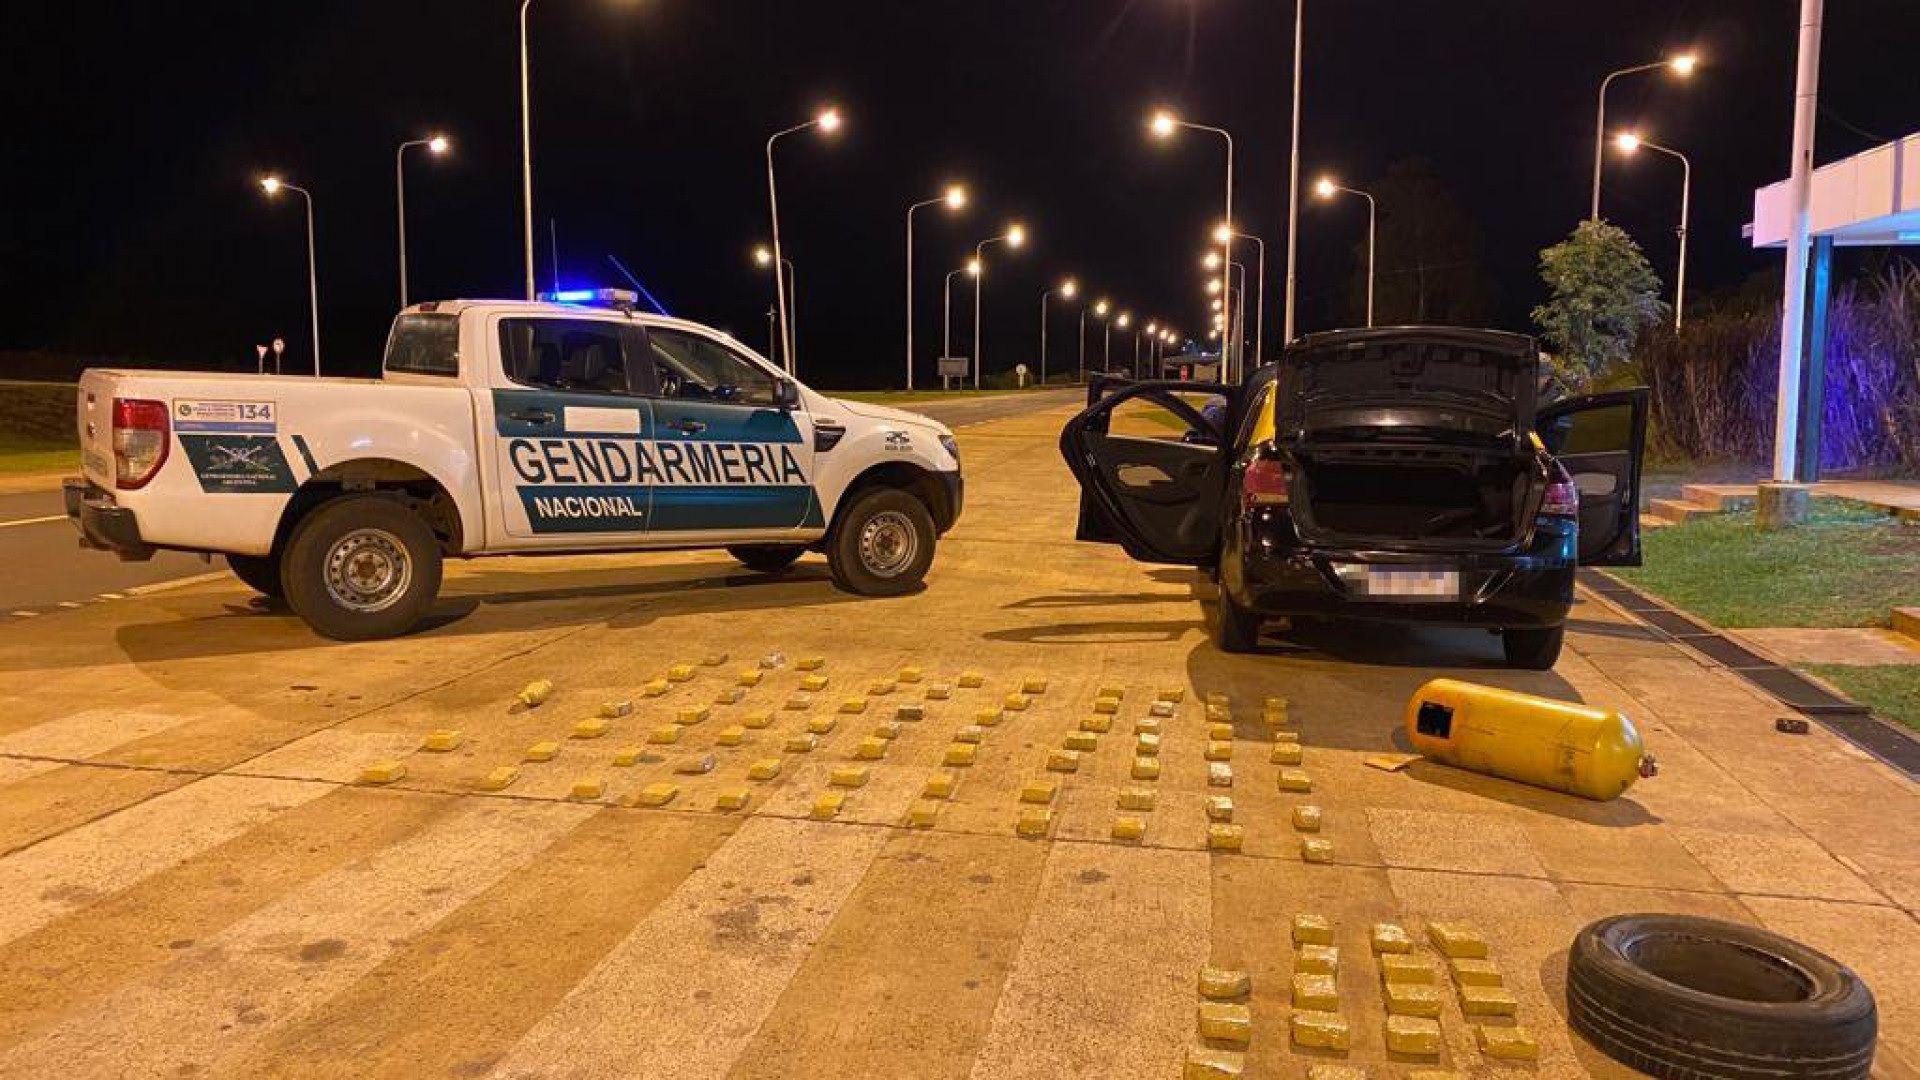 Gendarmeriacutea halloacute paquetes de droga ocultos en los lugares maacutes insoacutelitos de un taxi